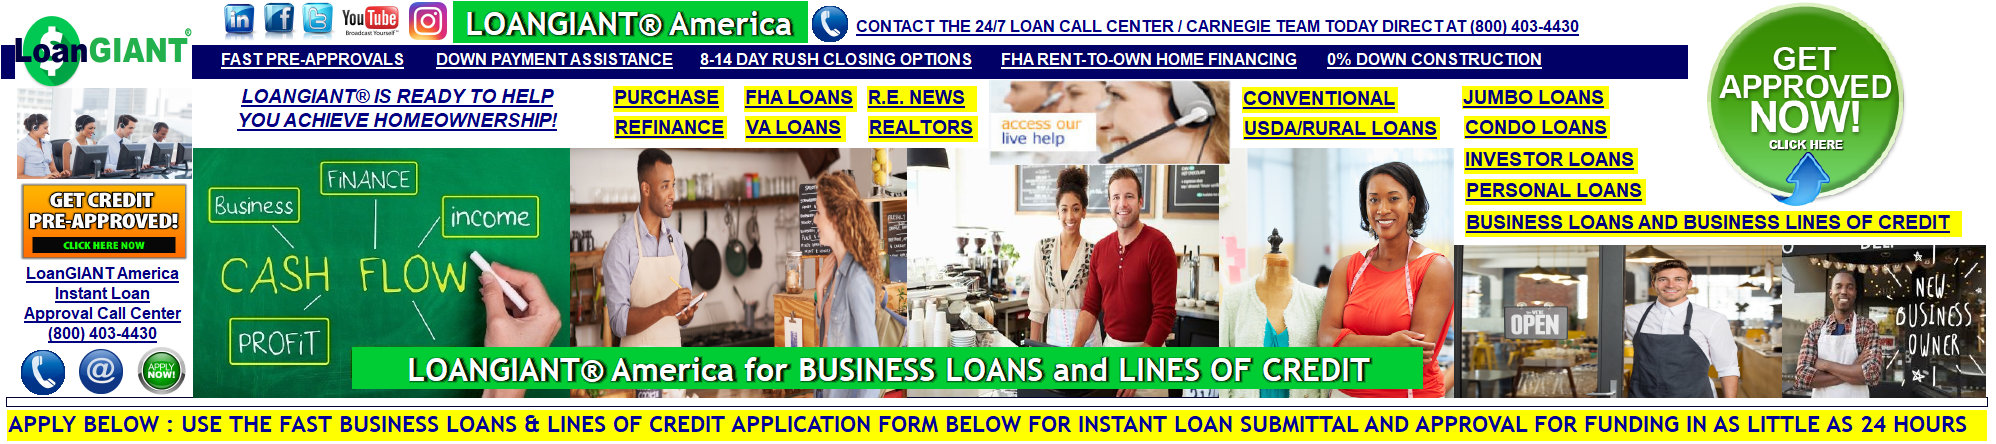 loan_giant_business_loans_money004001.jpg